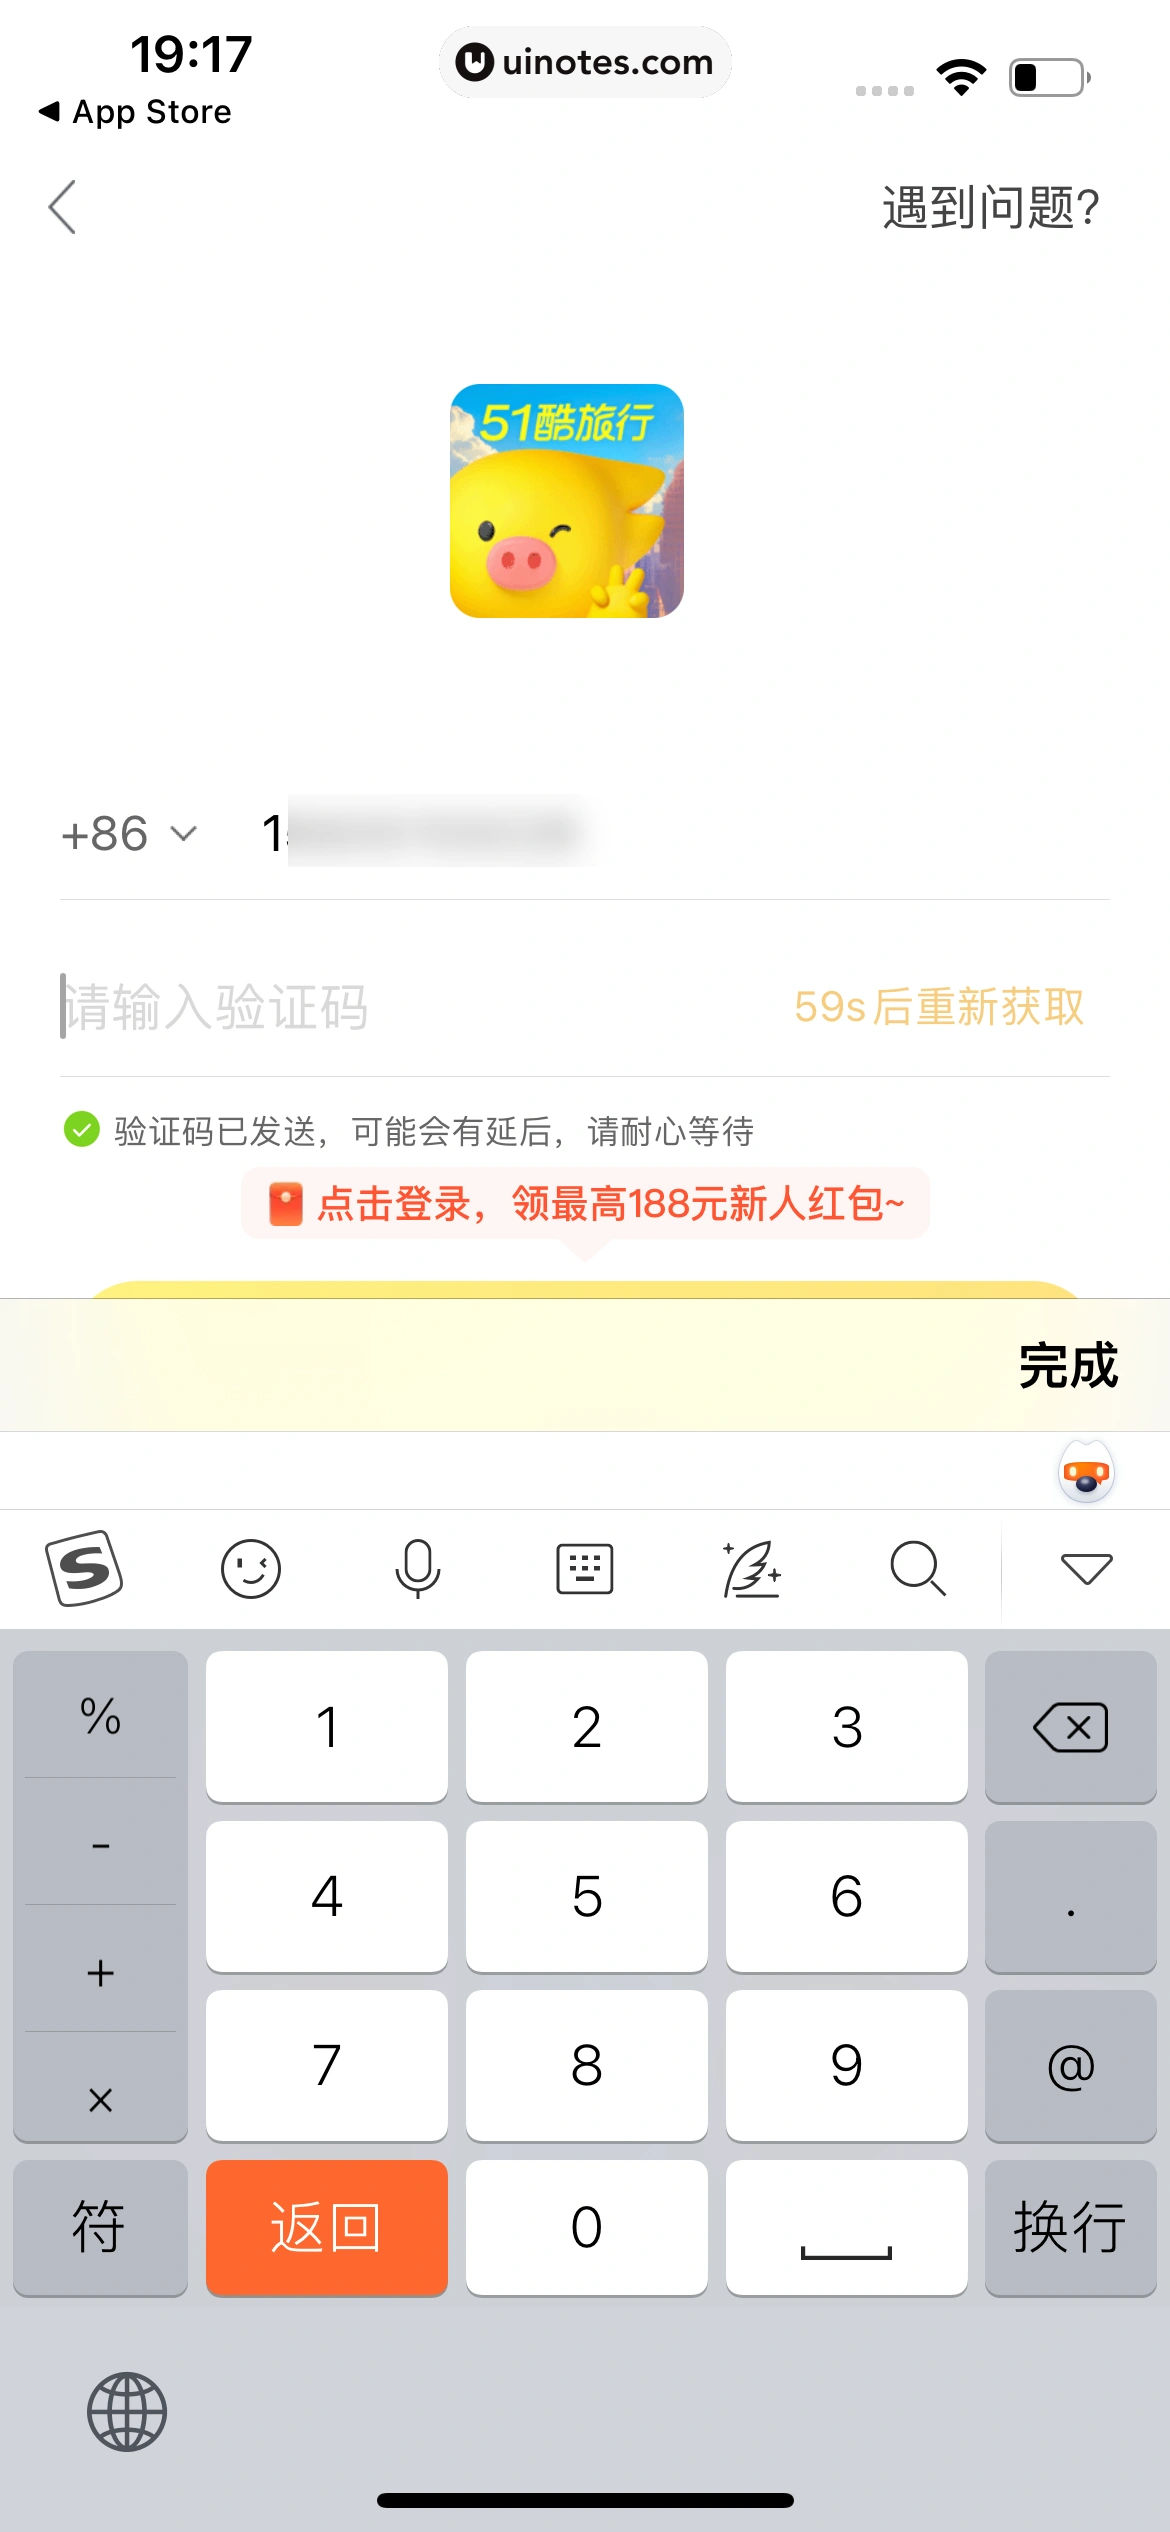 飞猪旅行 App 截图 015 - UI Notes